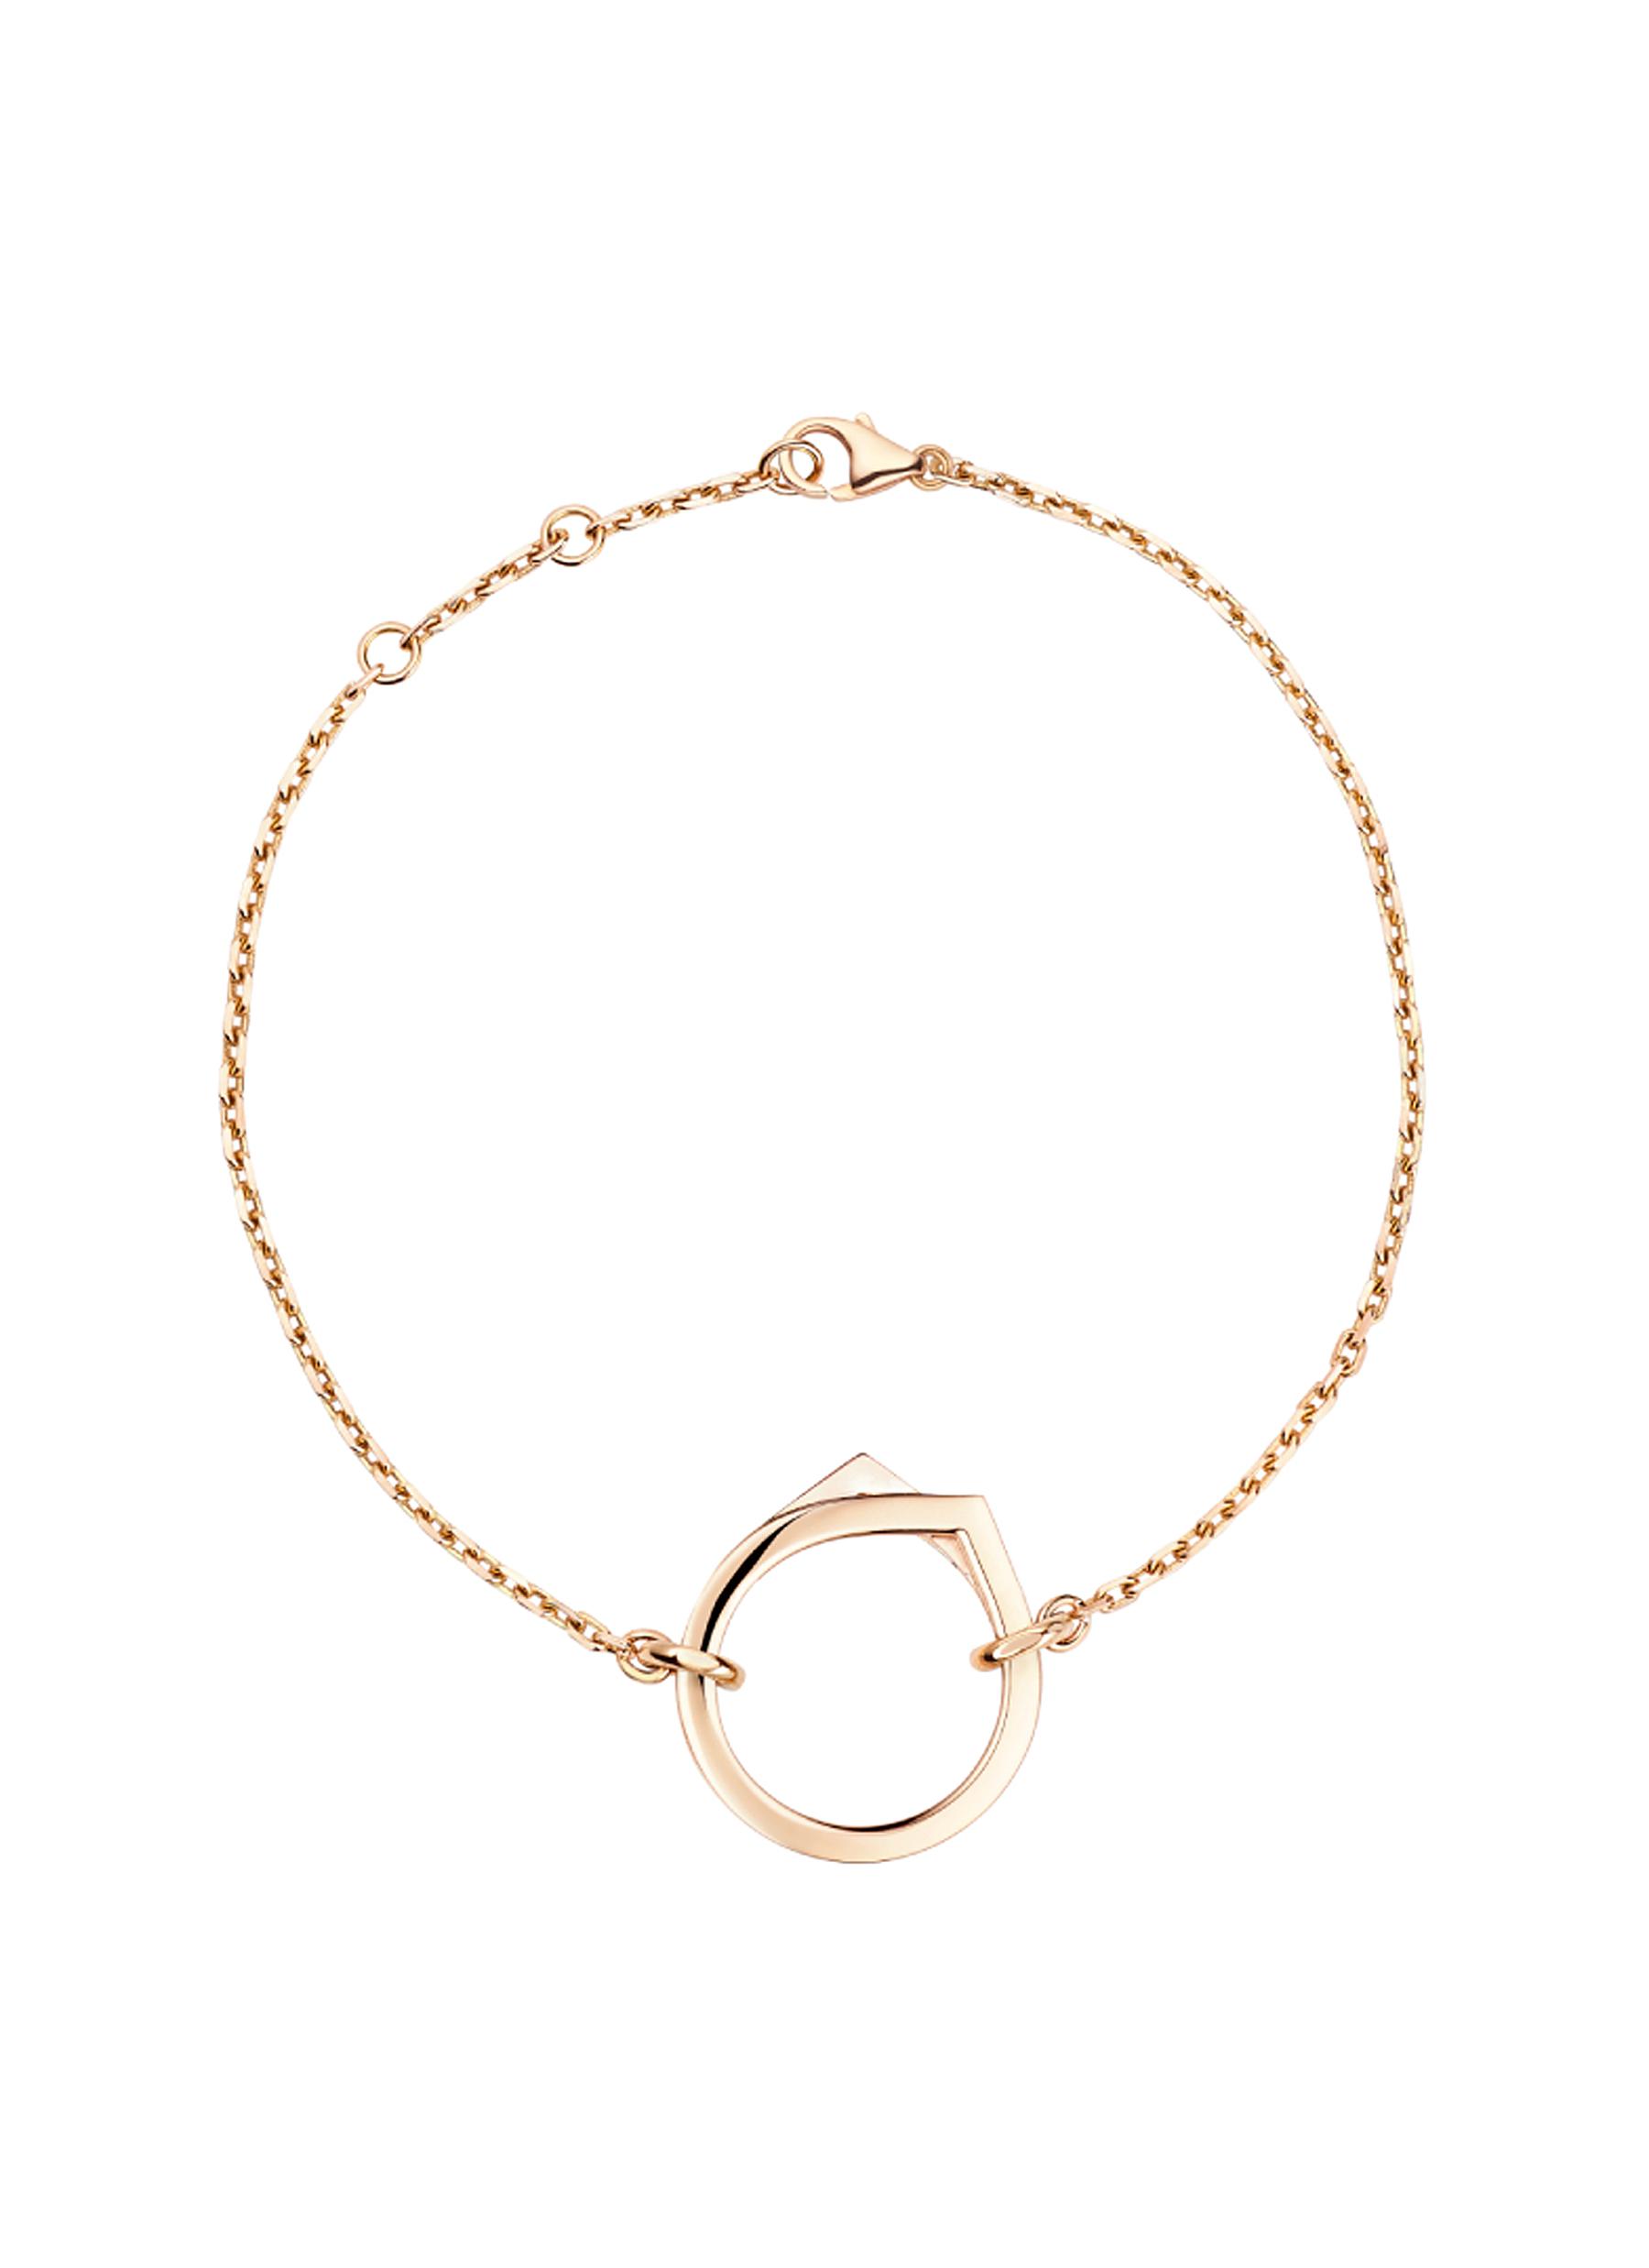 Antifer’ 18k rose gold chain bracelet